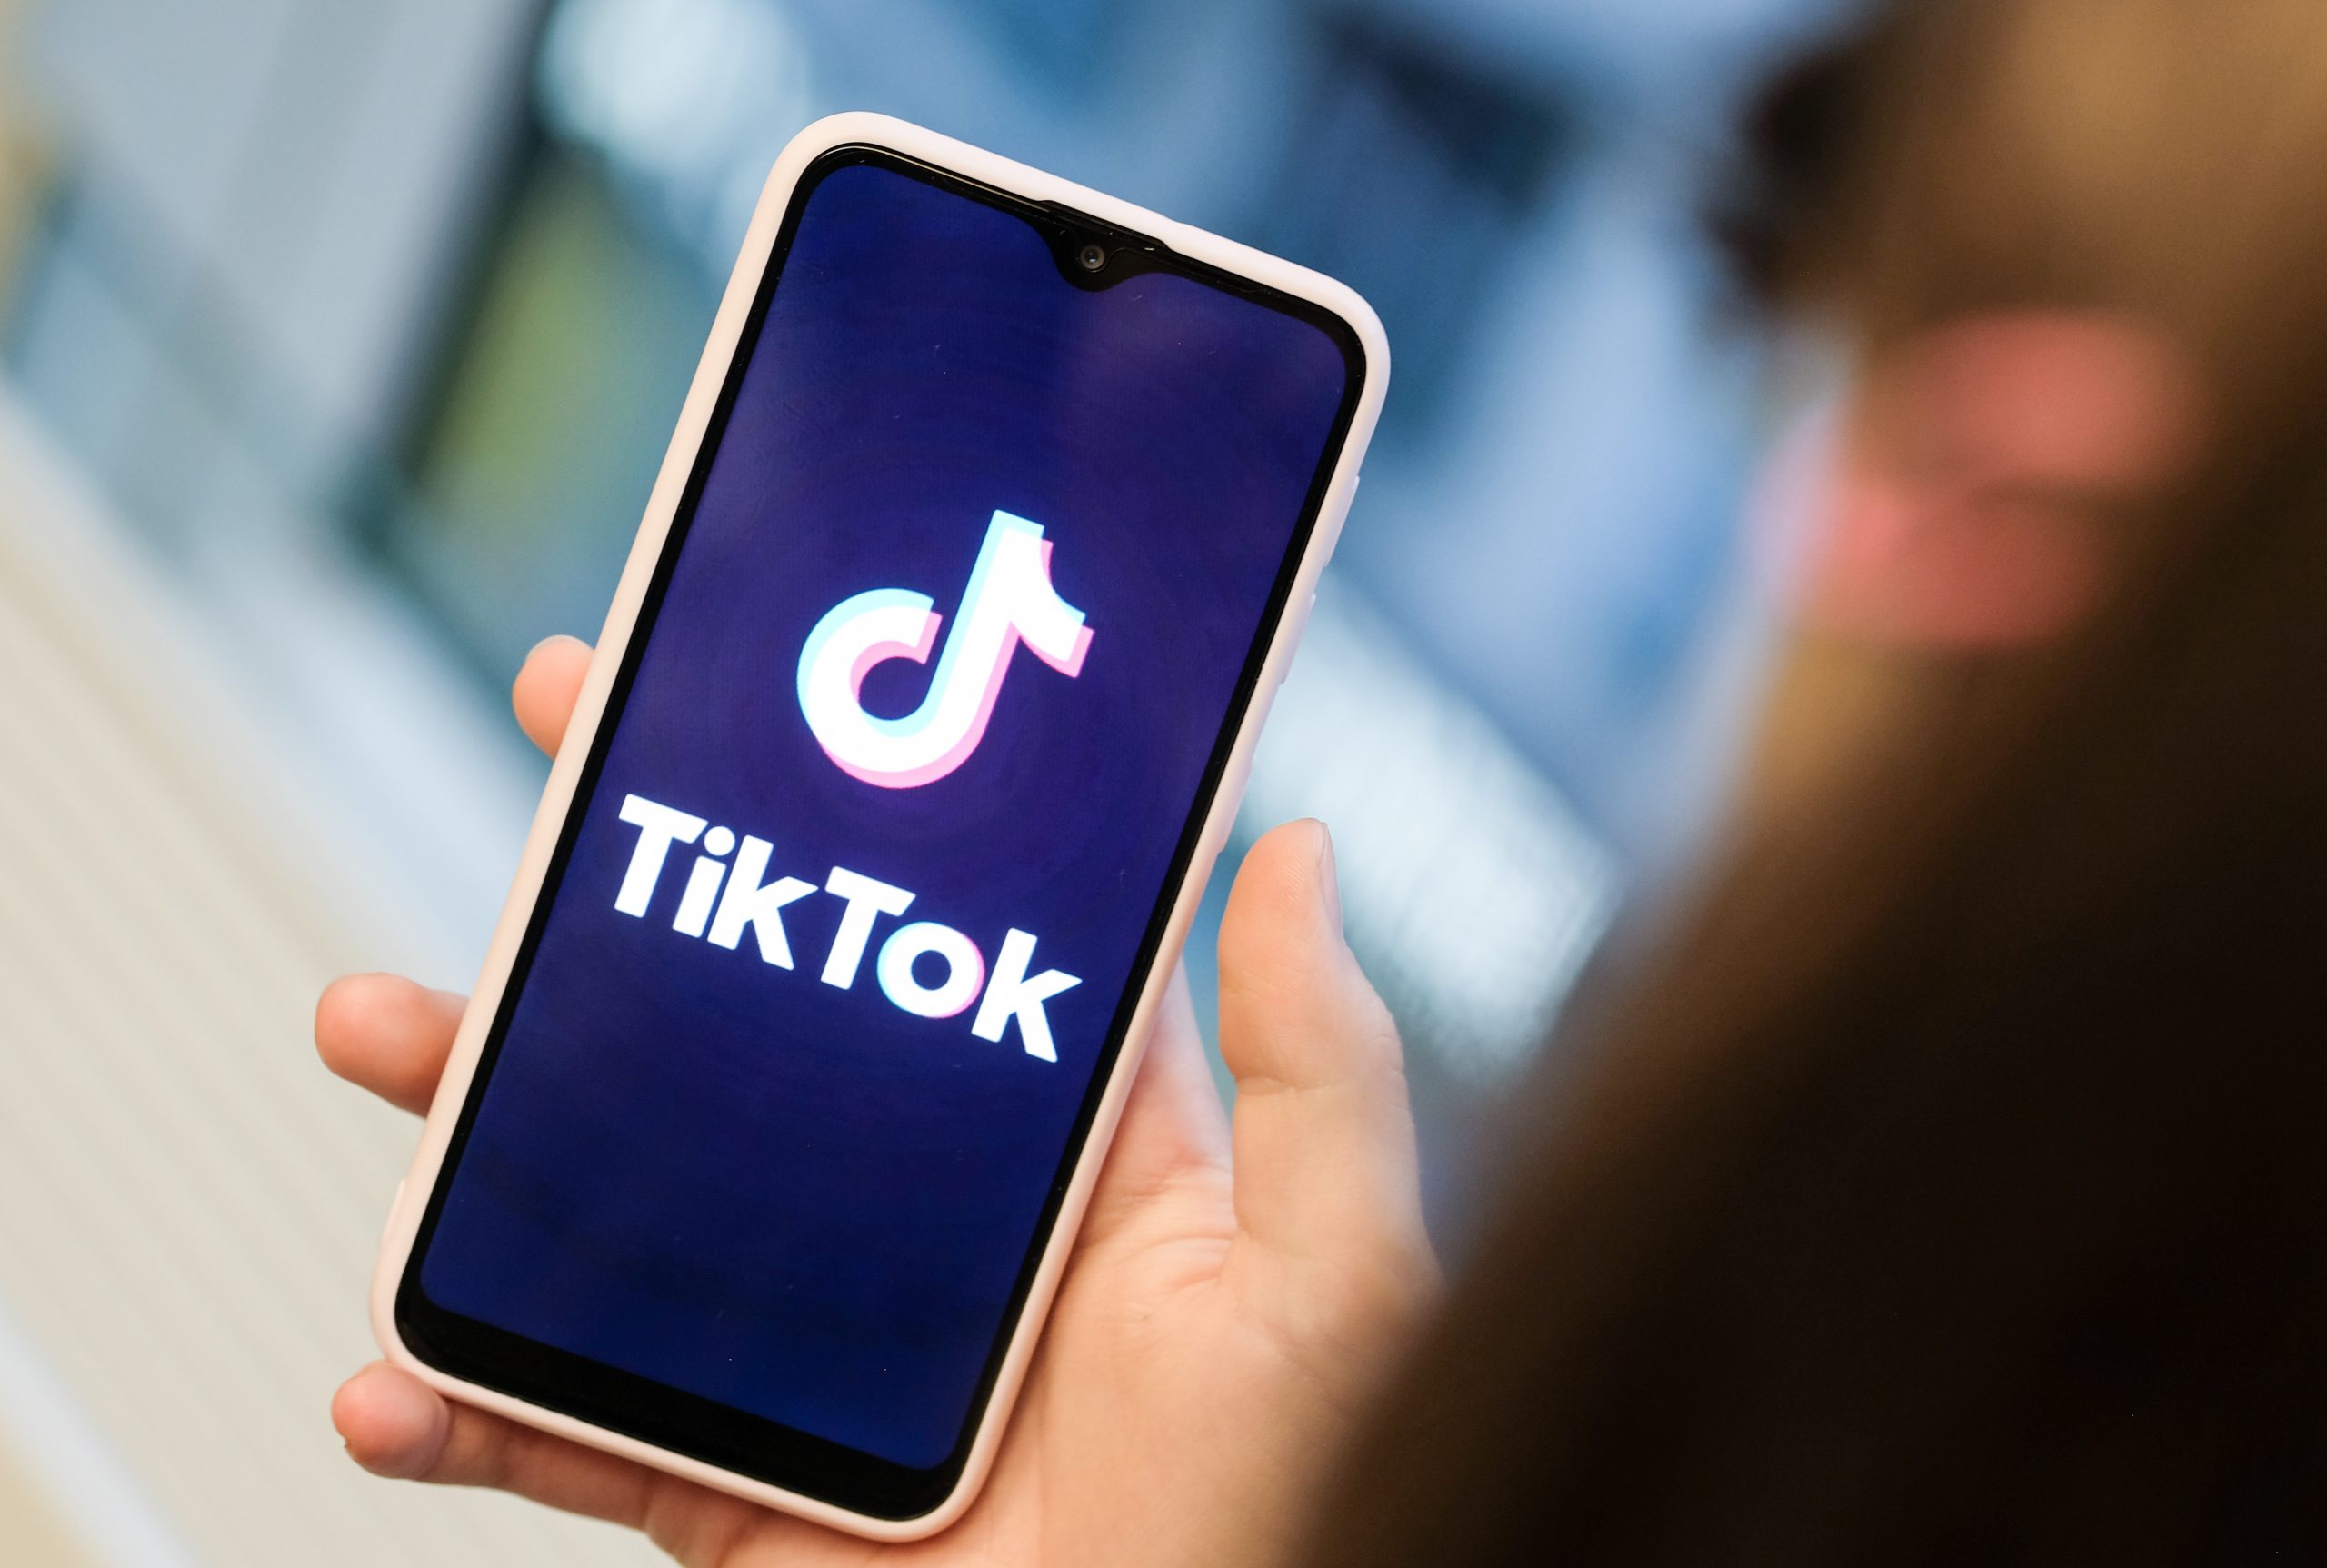 Tik Tok app on phone